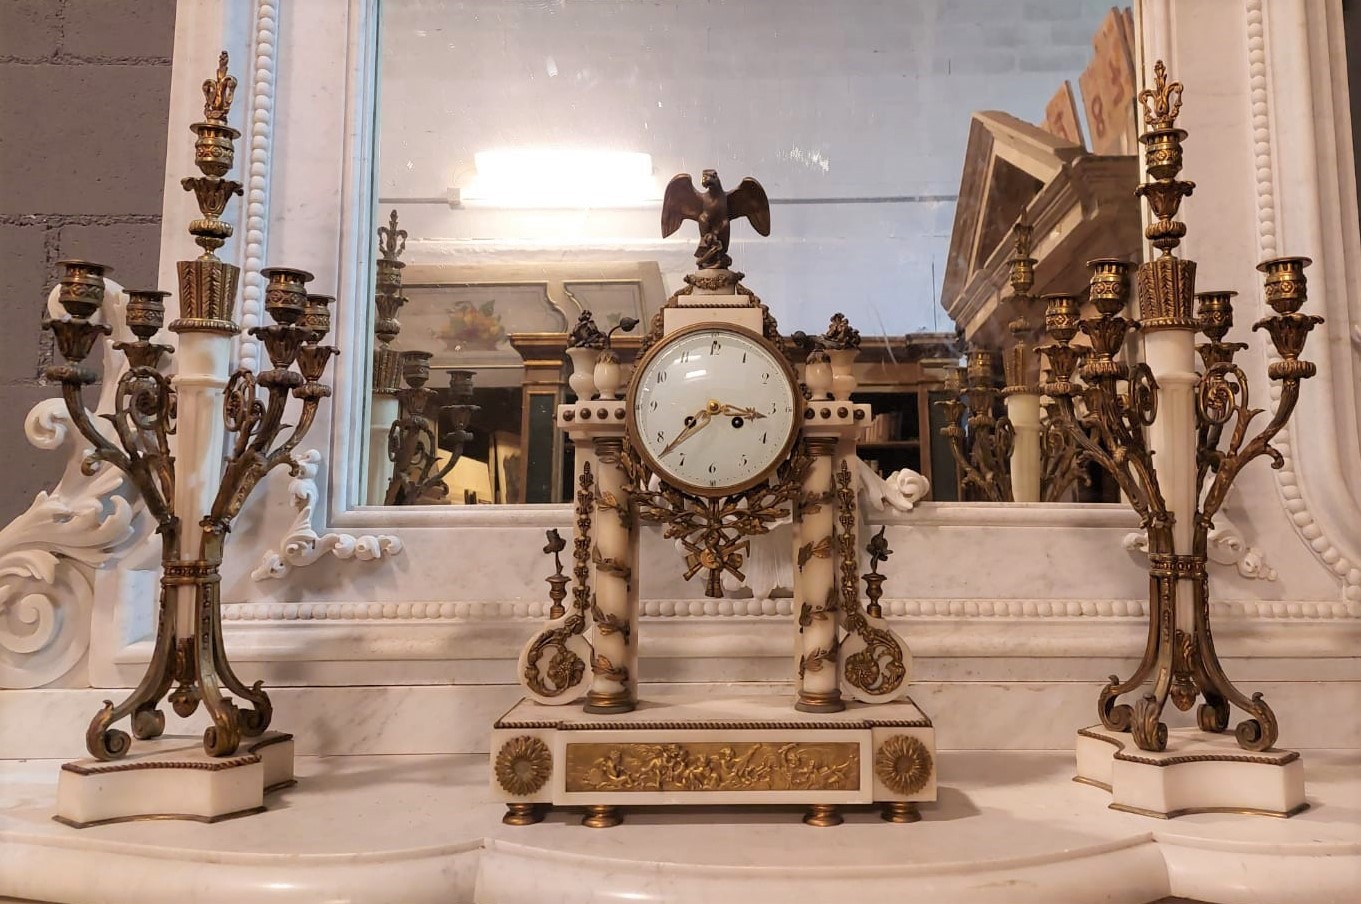 Aal236 - triptyque composé d'une horloge et d'un candélabre, avec des sculptures